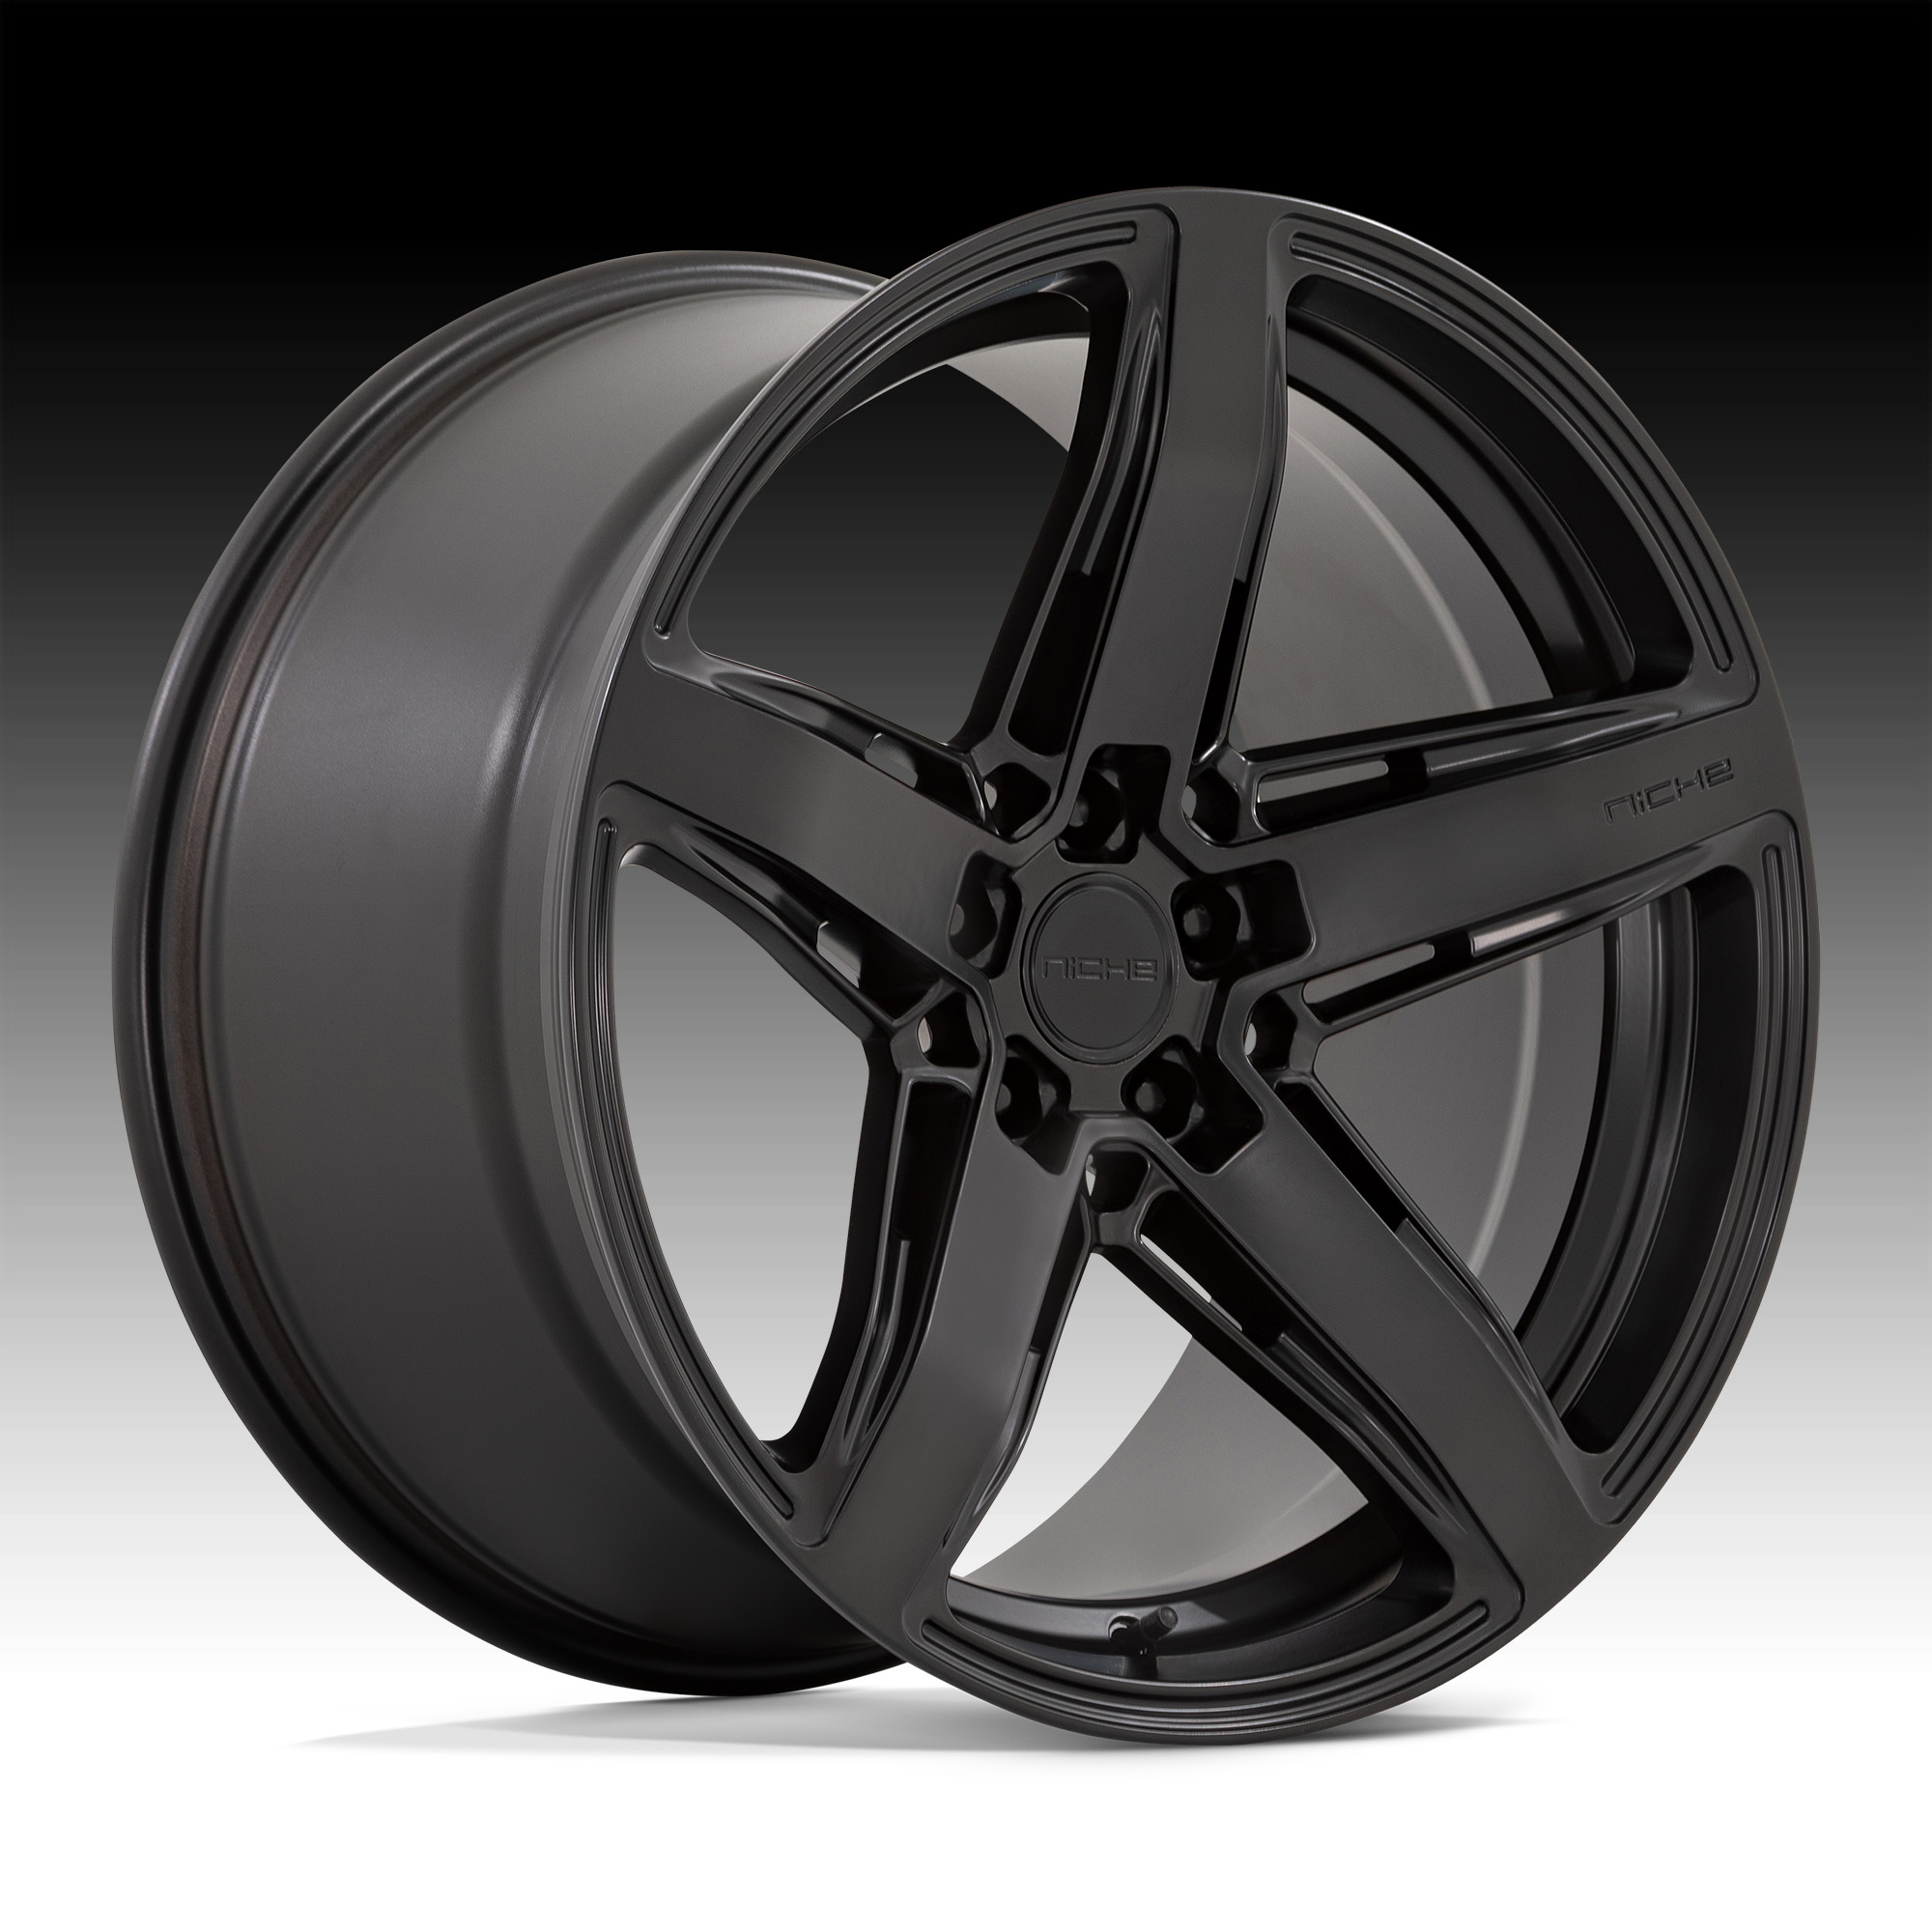 Niche Teramo M269 Matte Black Custom Wheels - M269 / Teramo - Niche Road  Wheels - Custom Wheels for Trucks